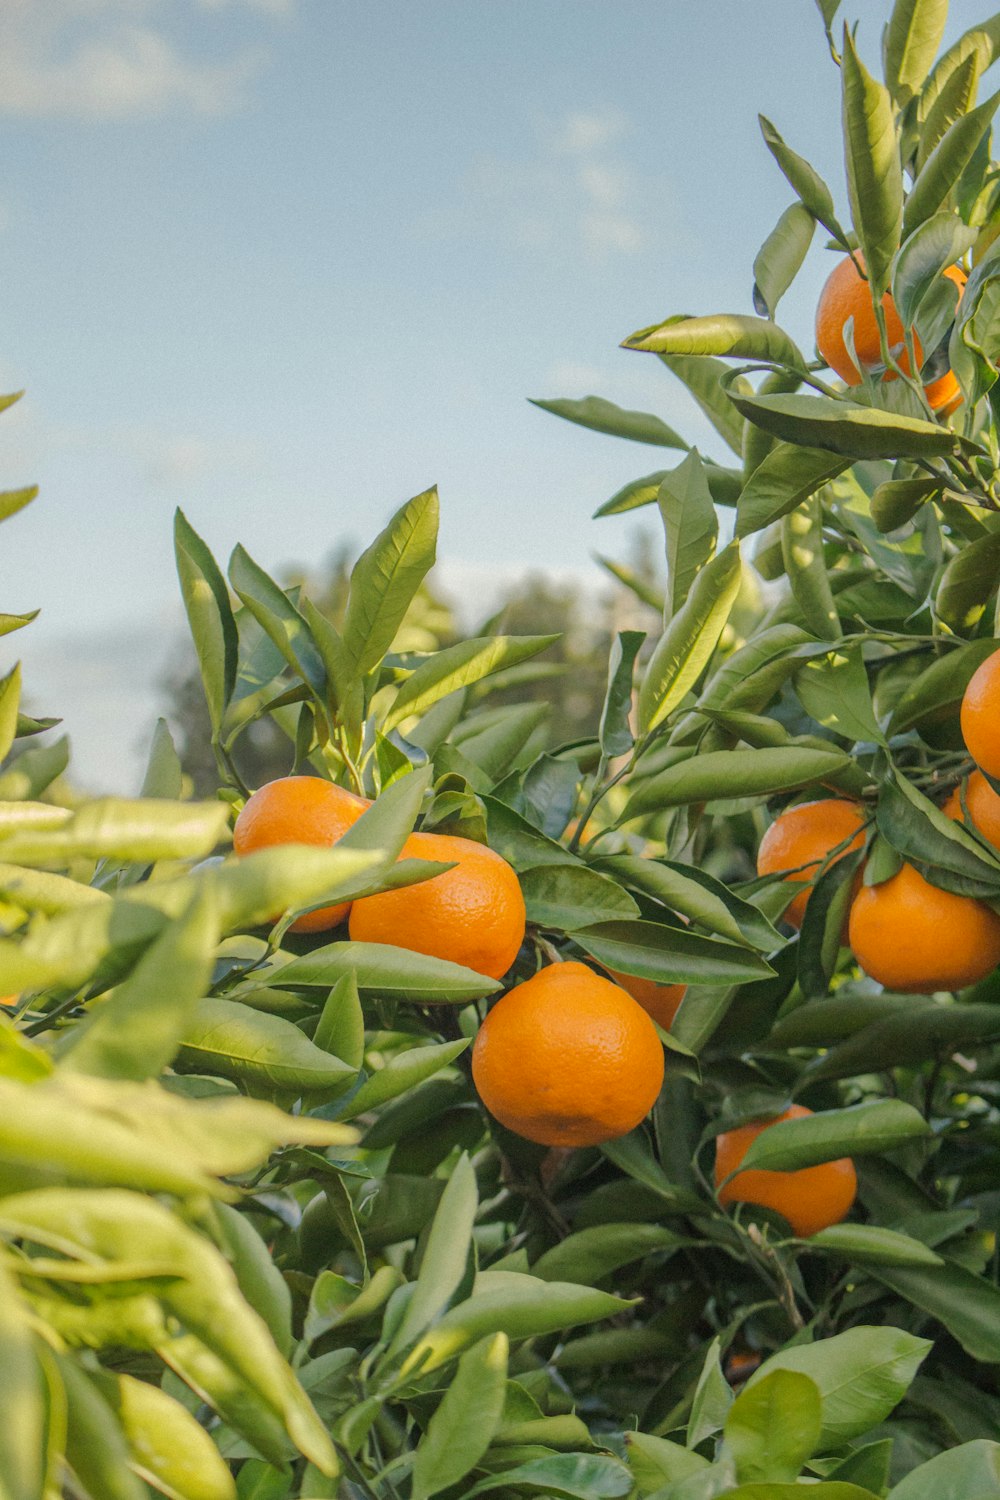 日中の摘み残しのオレンジ果実のセレクティブフォーカス撮影